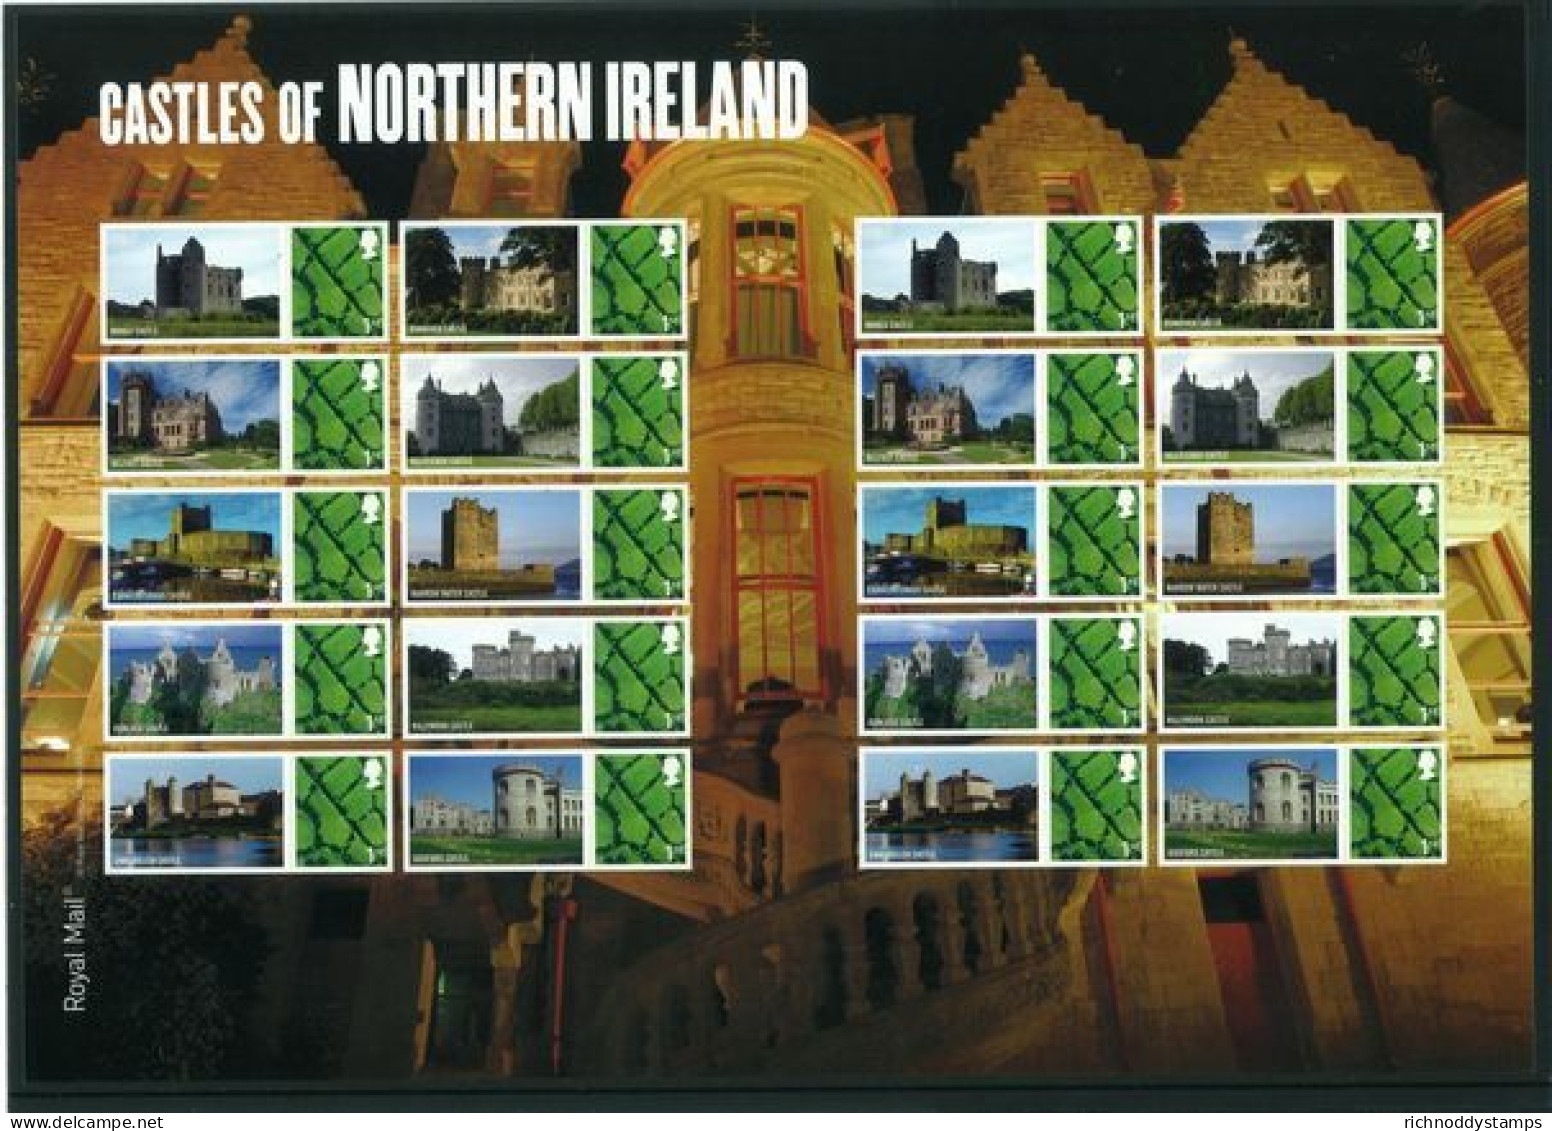 2009 Nothern Ireland Castles Patchwork Fields 1st Class Smilers Unmounted Mint.  - Persoonlijke Postzegels